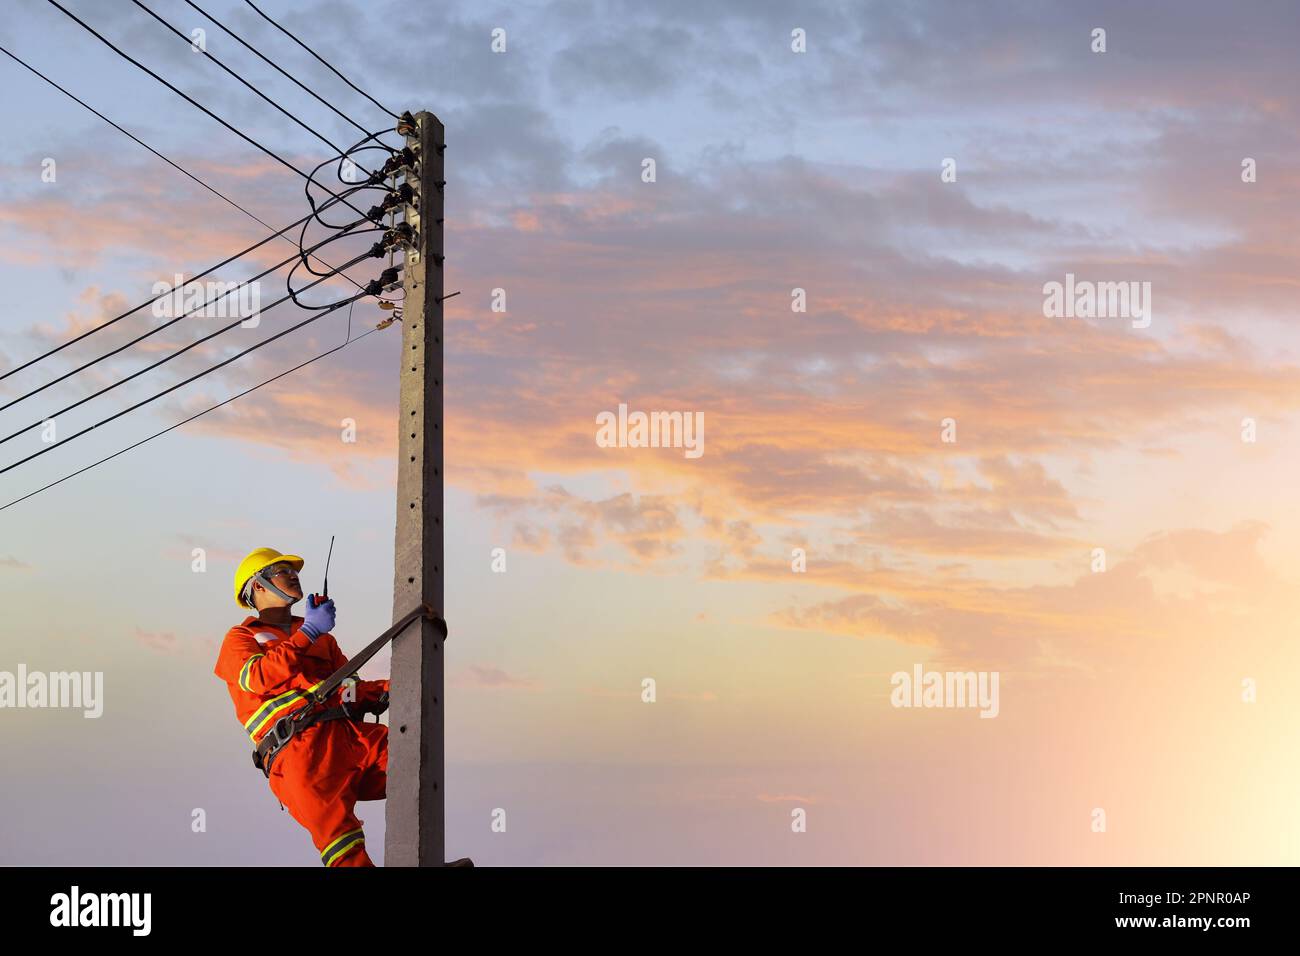 Électricien escalade un pylône d'électricité pour réparer une ligne électrique, Thaïlande Banque D'Images